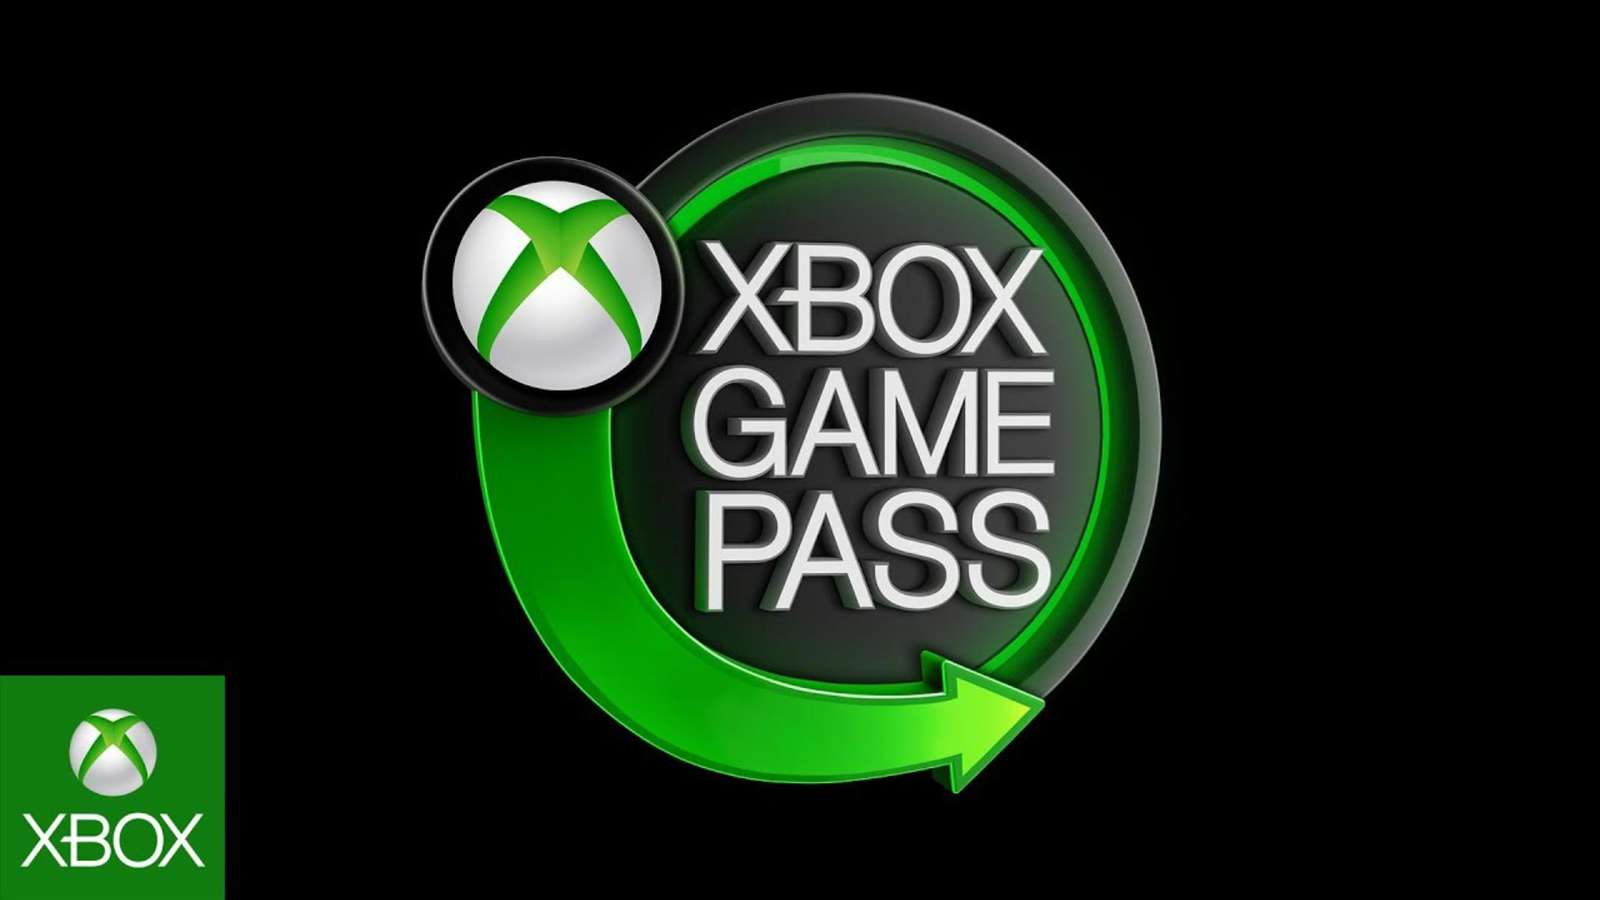 Xbox microsoft ip activision